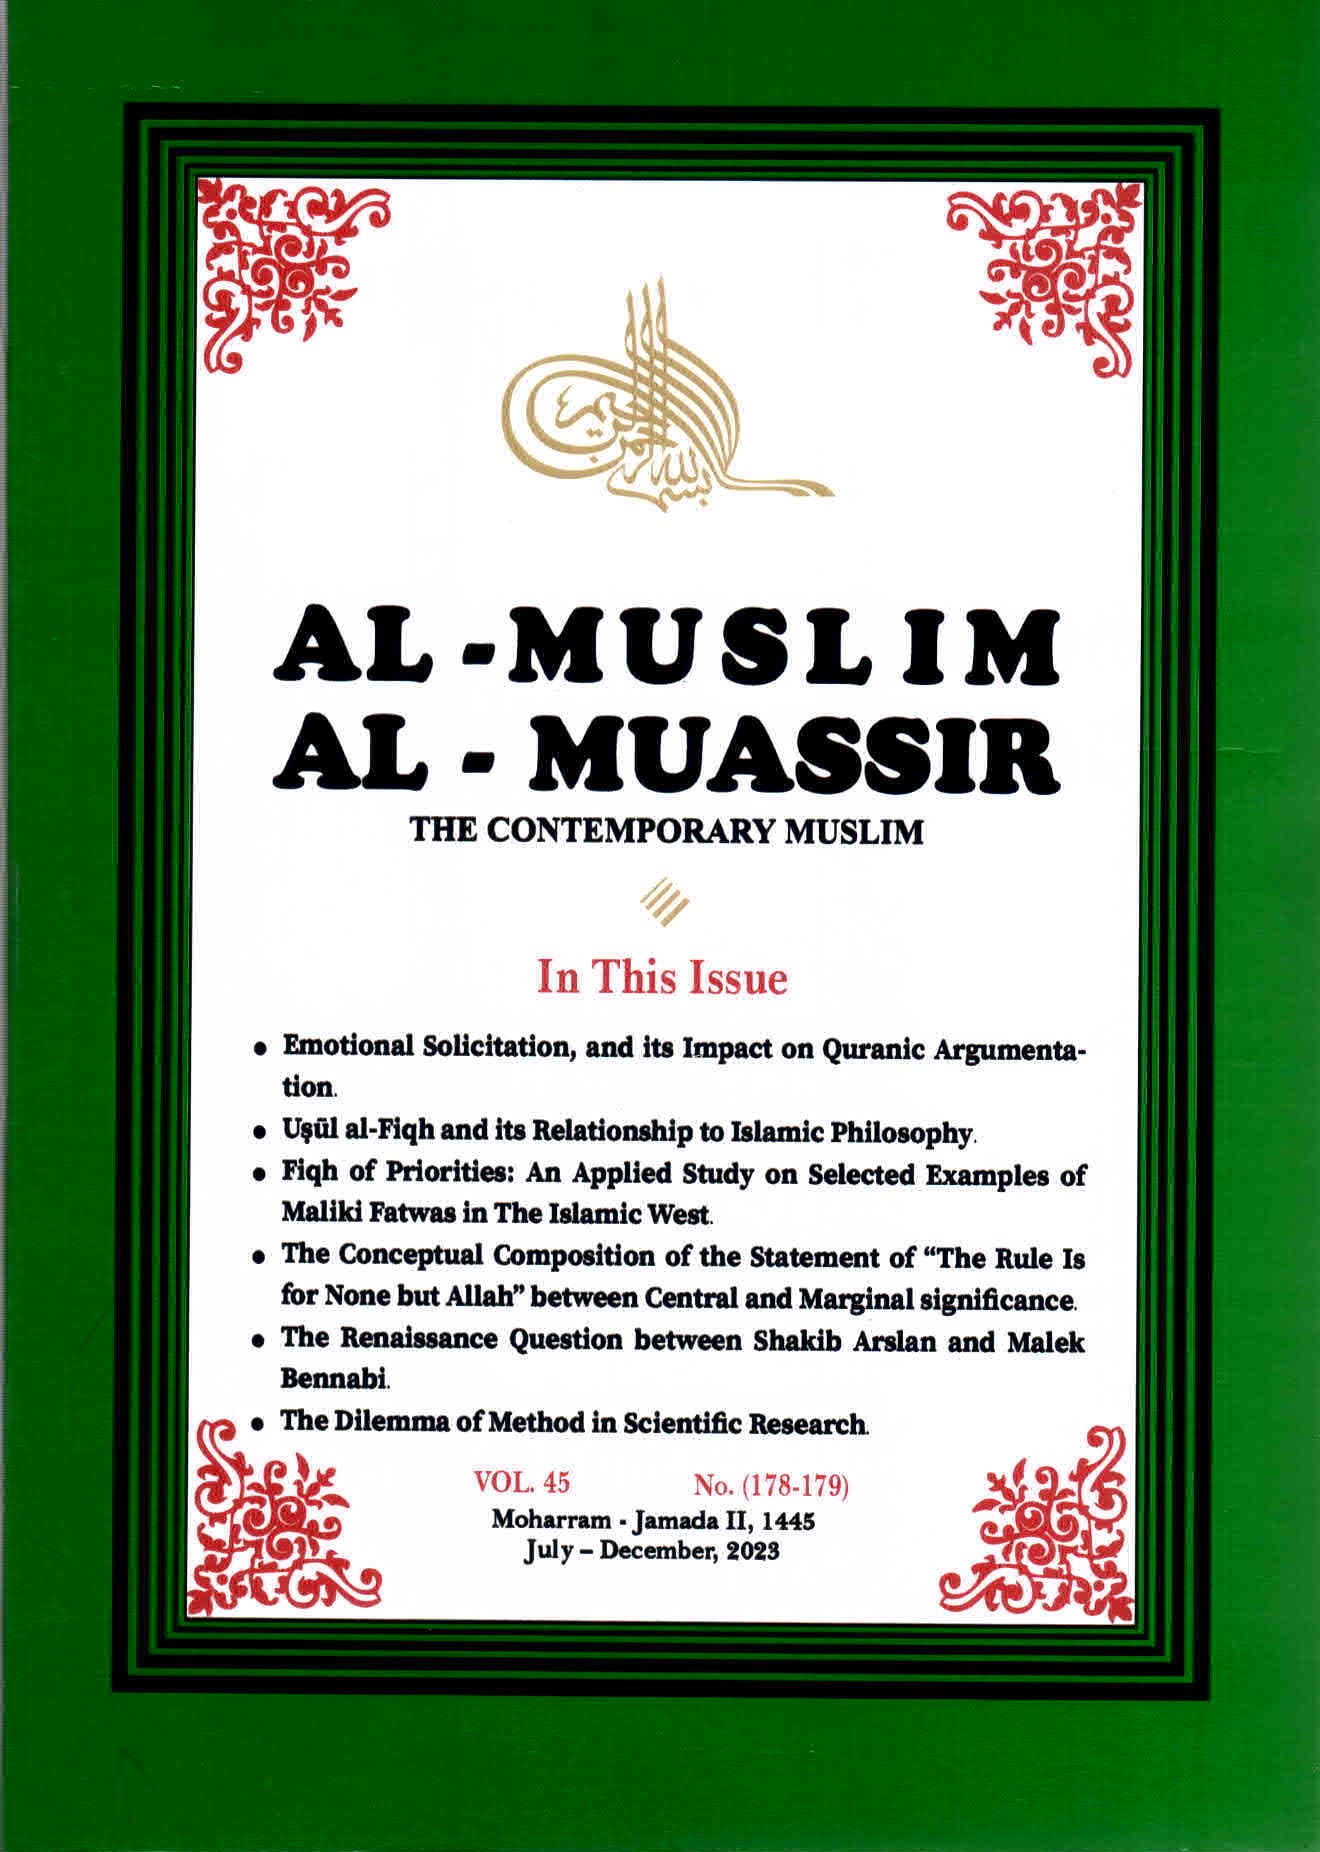 خلفية غلاف العدد 178- 179 مجلة المسلم المعاصر.